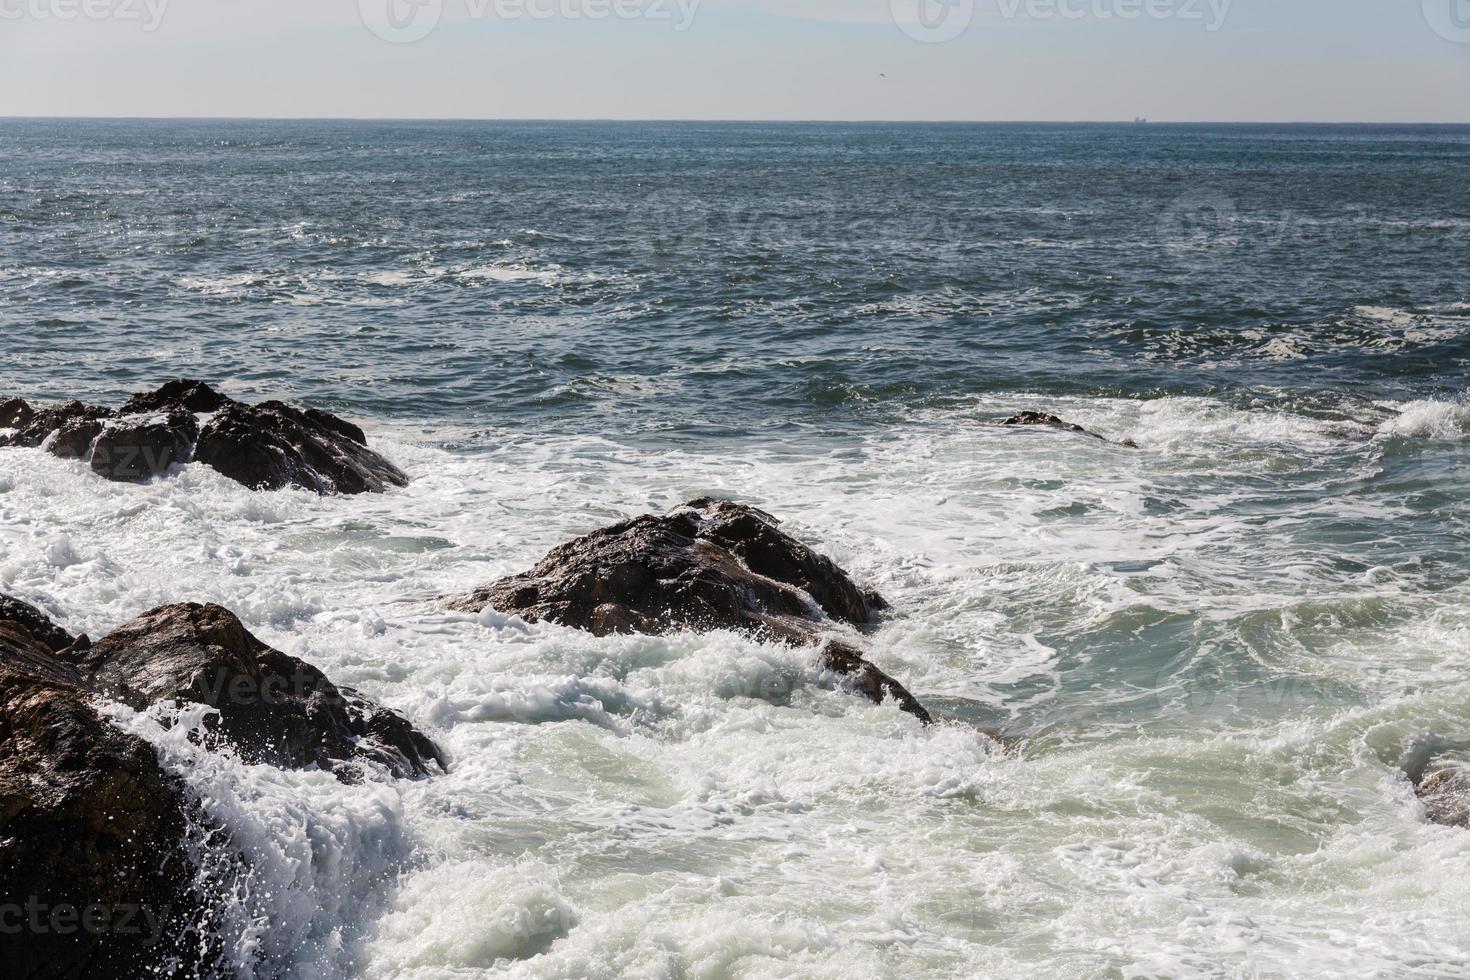 olas rompiendo en la costa portuguesa foto